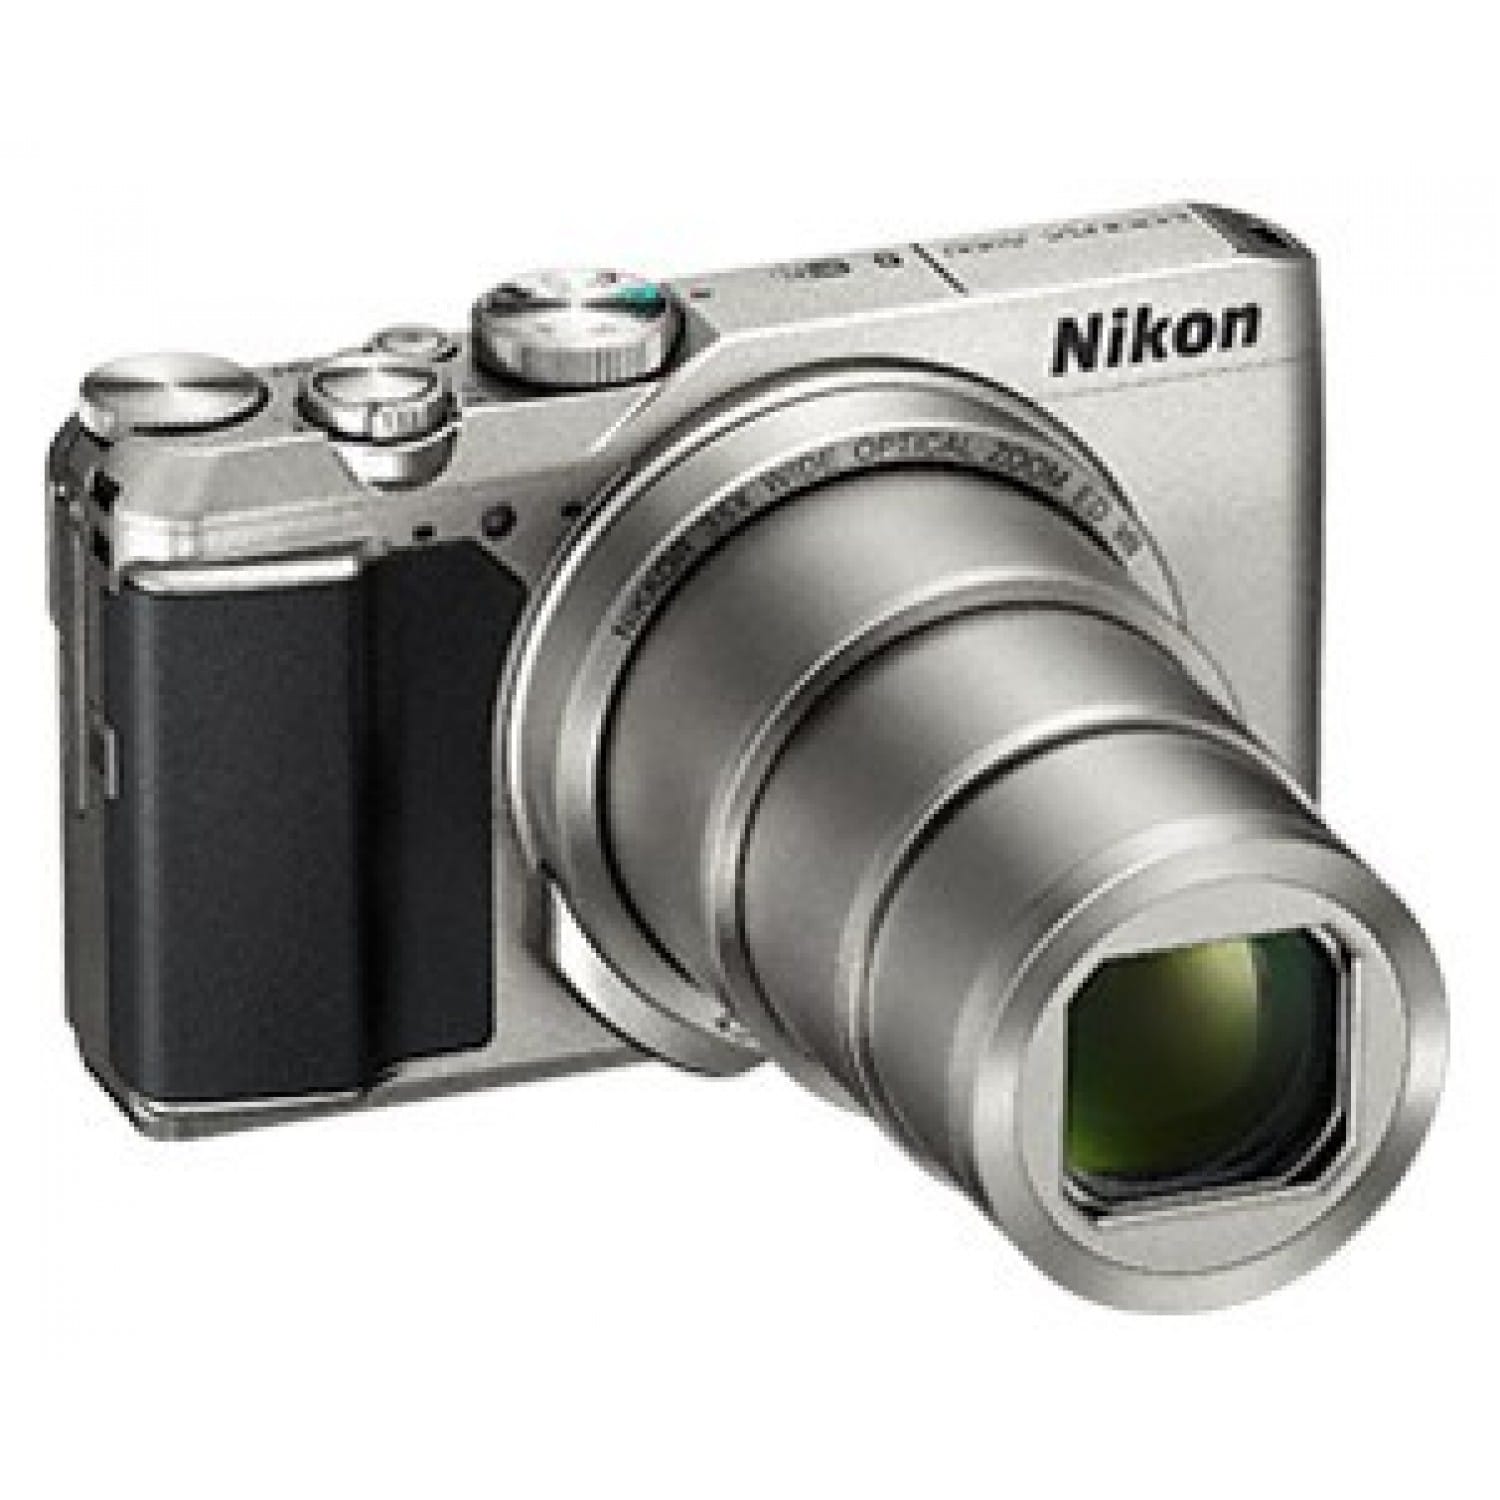 NIKON - Appareil compact numérique Coolpix A900 argent - 20,3Mpx - zoom 35x  (24-840mm) - écran 7,5cm pivotable